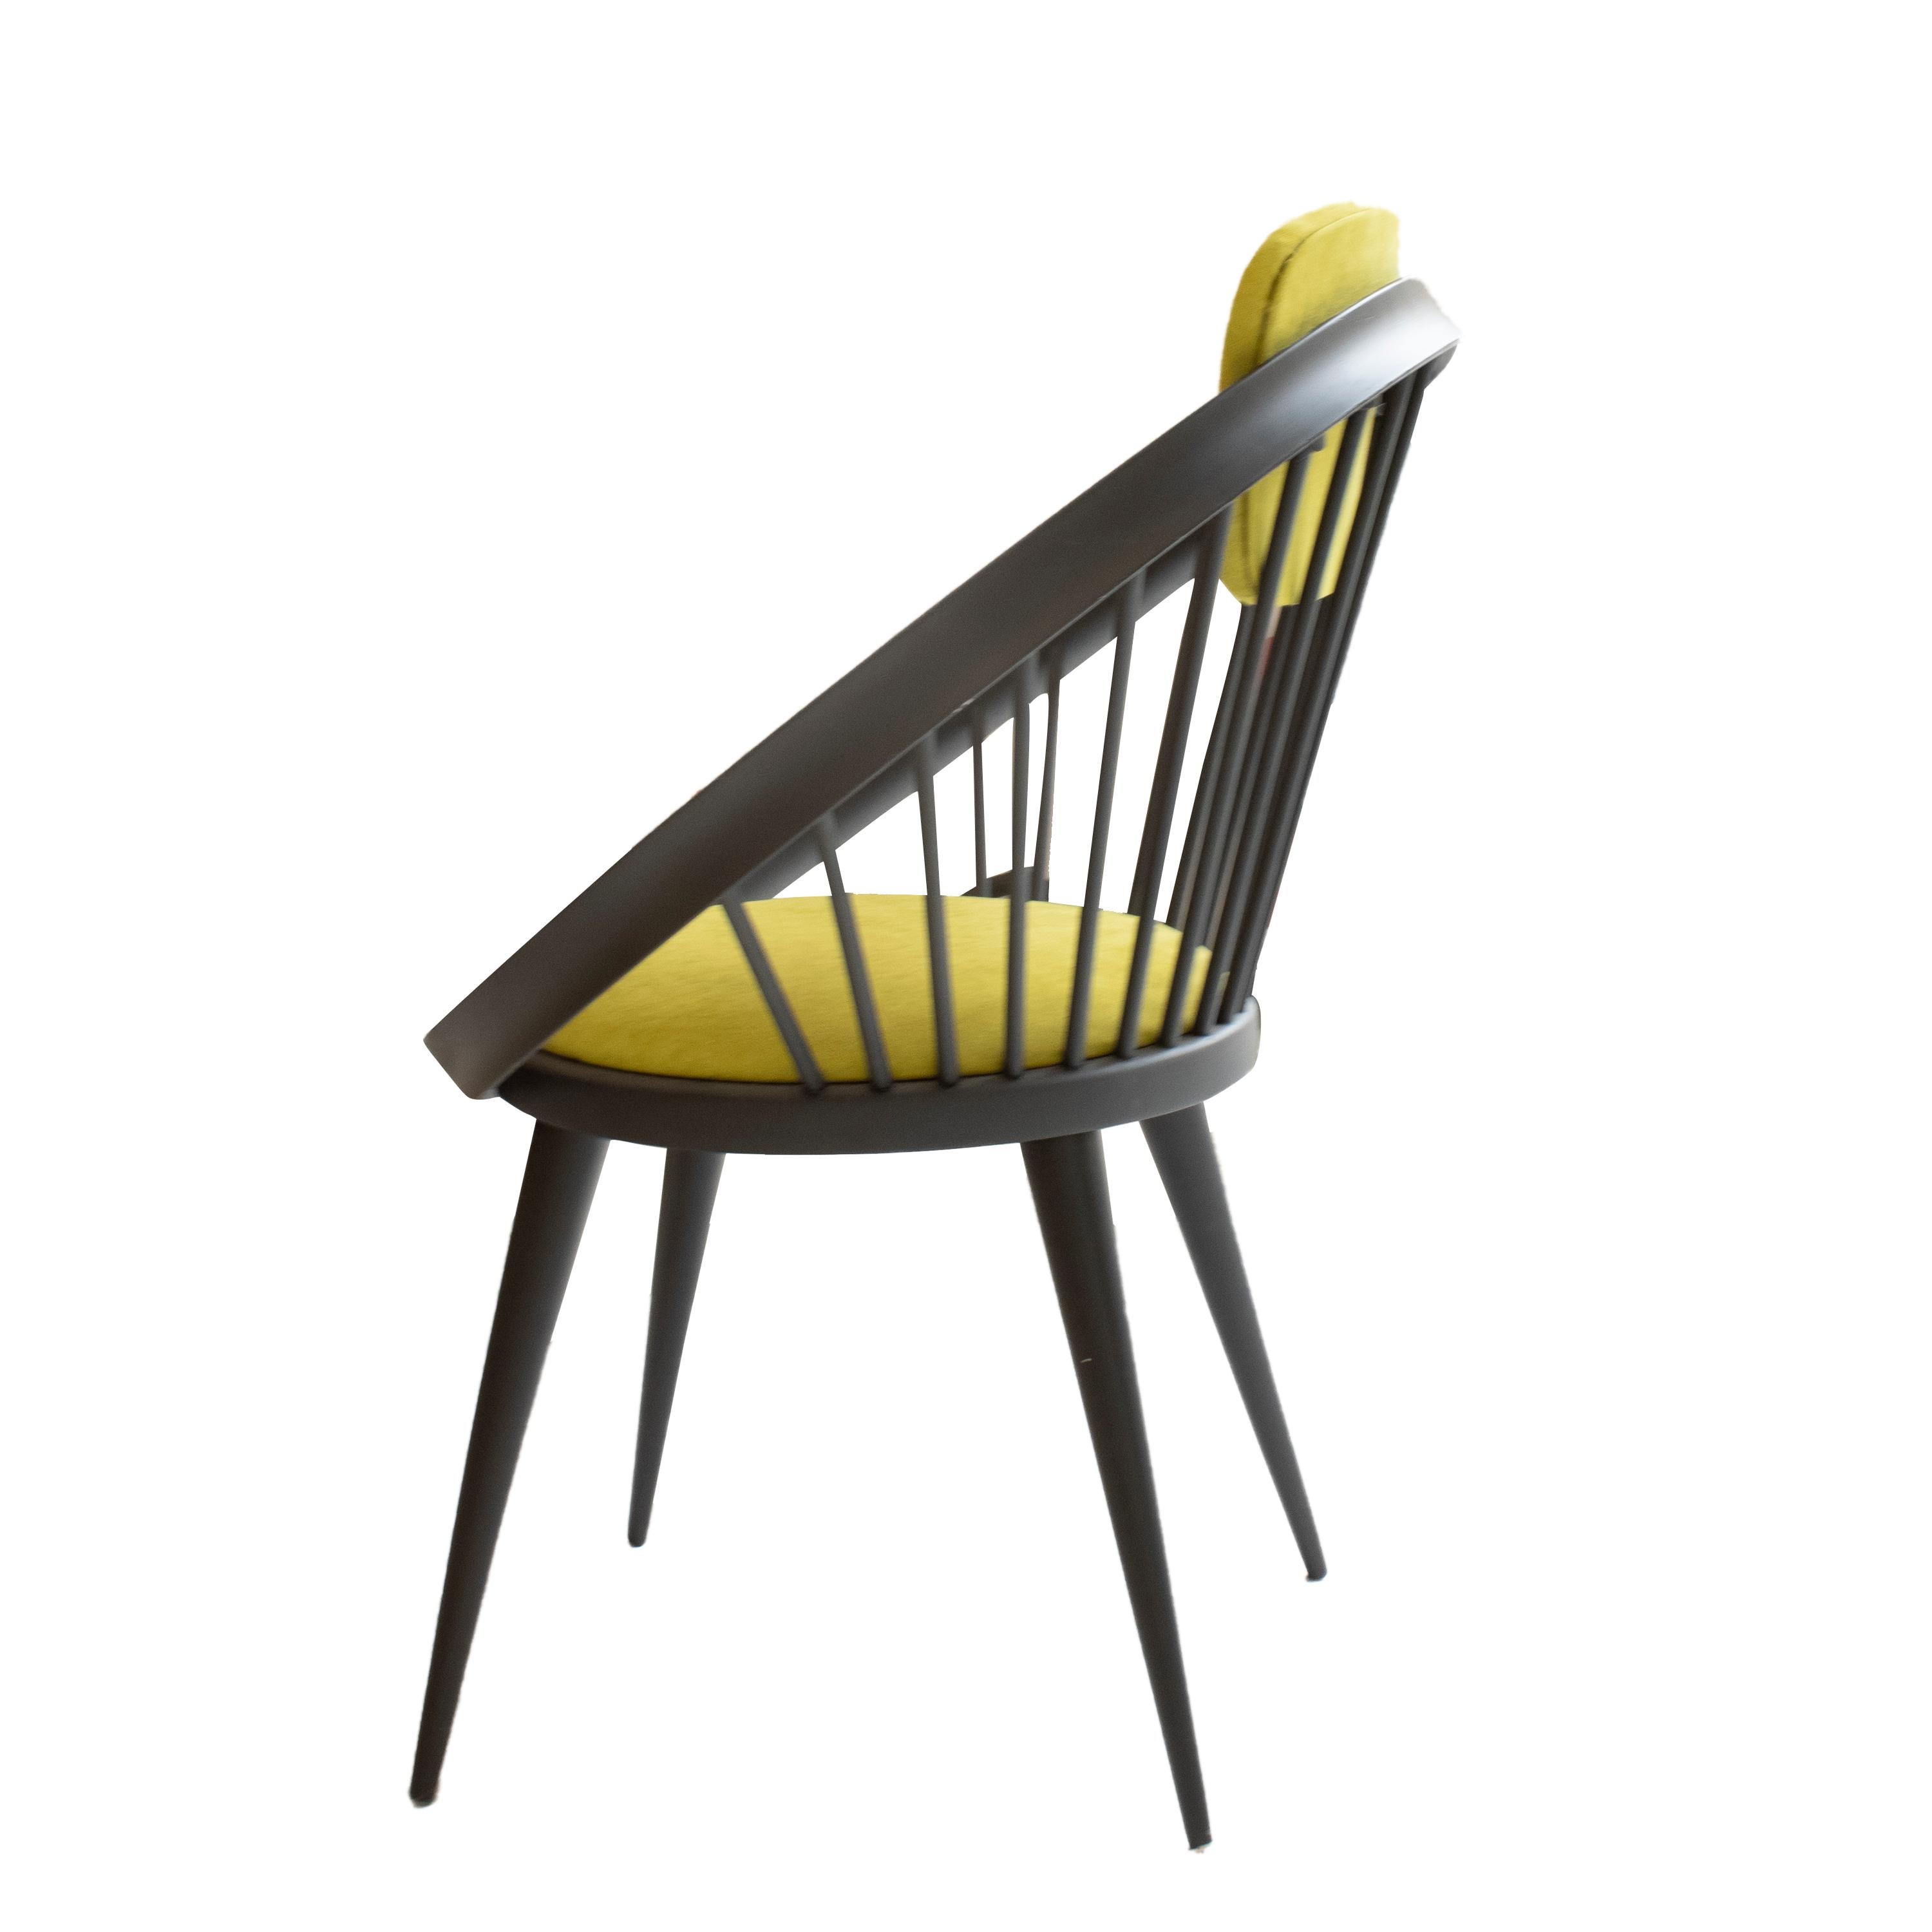 Paire de deux fauteuils conçus dans les années 1960 par le designer suédois Yngve Ekström et fabriqués par sa propre marque Swedese. Le fauteuil est en bois massif laqué noir avec l'assise et le dossier rembourrés en tissu de coton vert.